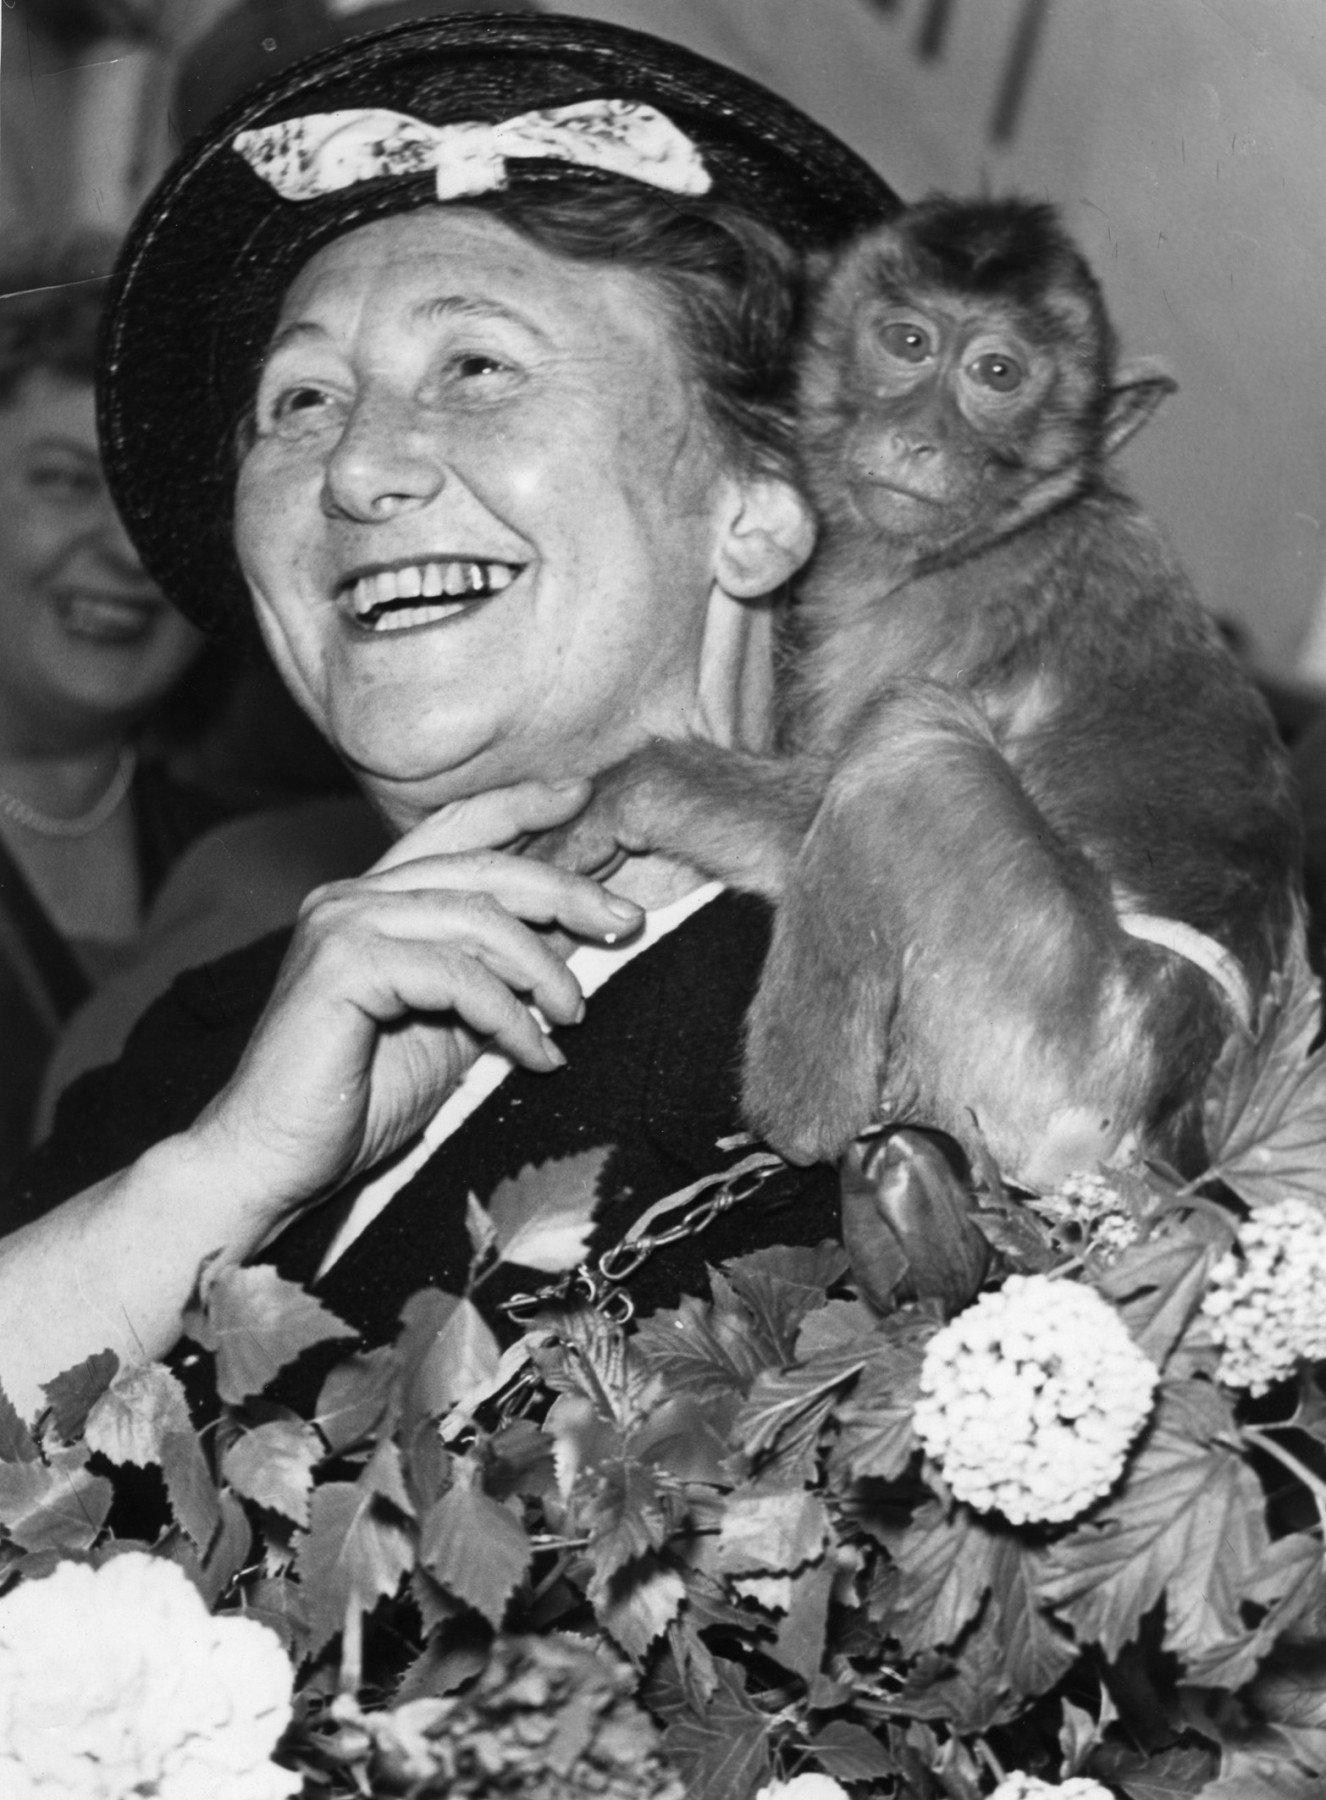 Schwarz-weiß Porträt: Lachende Frau mit Hut, mit einem Affen auf der Schulter. Im Vordergrund Blumengestecke.